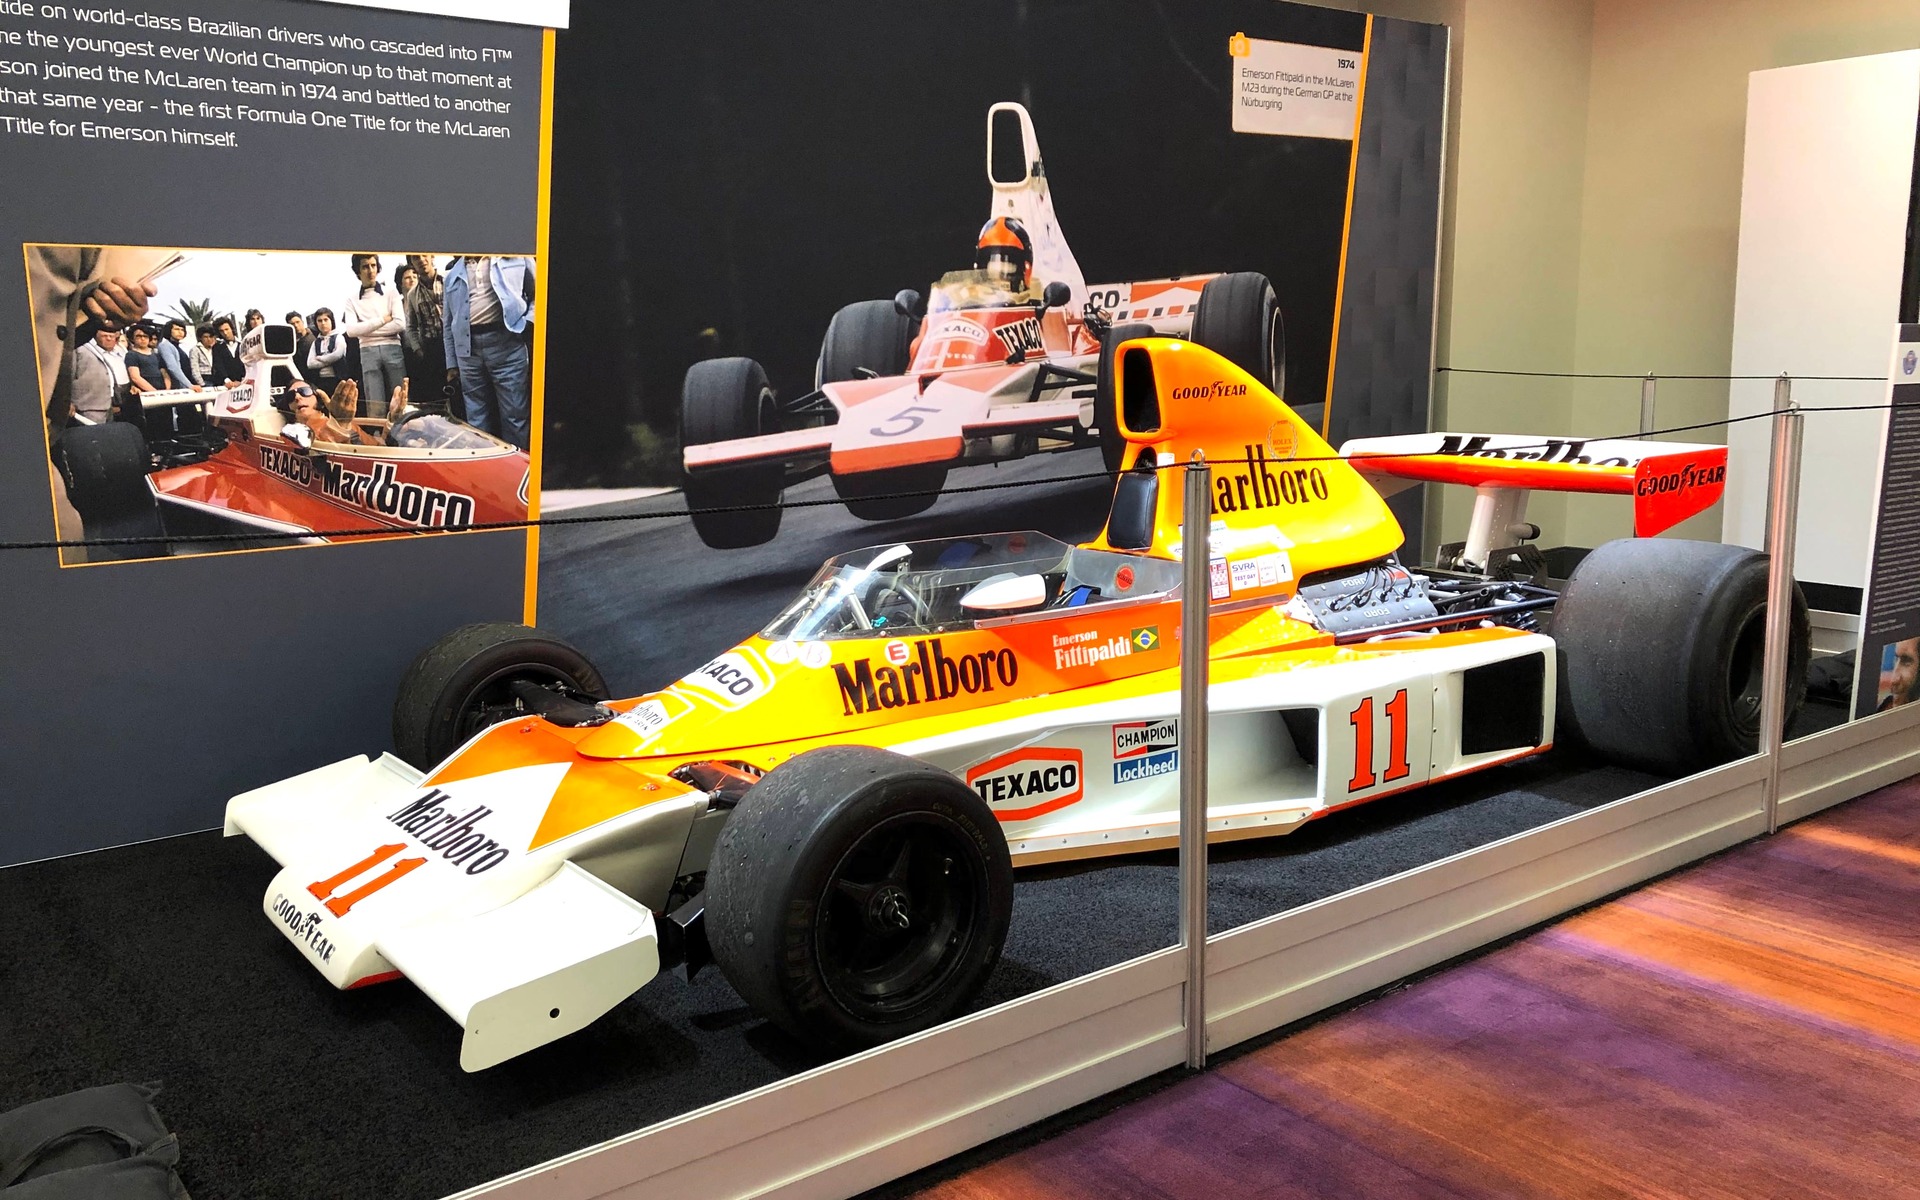 <p><strong>McLaren M23&nbsp;1974</strong></p>